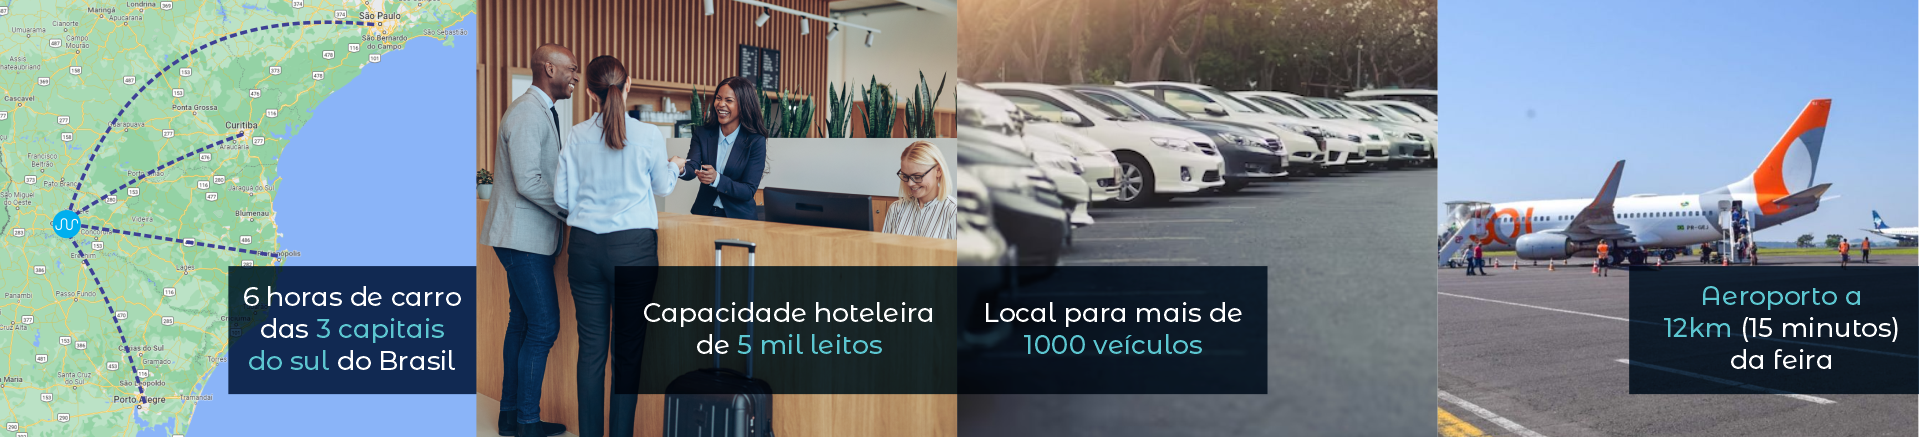 6 Horas de carro das 3 capitais do sul do Brasil | Capacidade hoteleira de 5 mil leitos | local para mais de 1000 veículos | Aeroporto a 12km (15 minutos) da feira